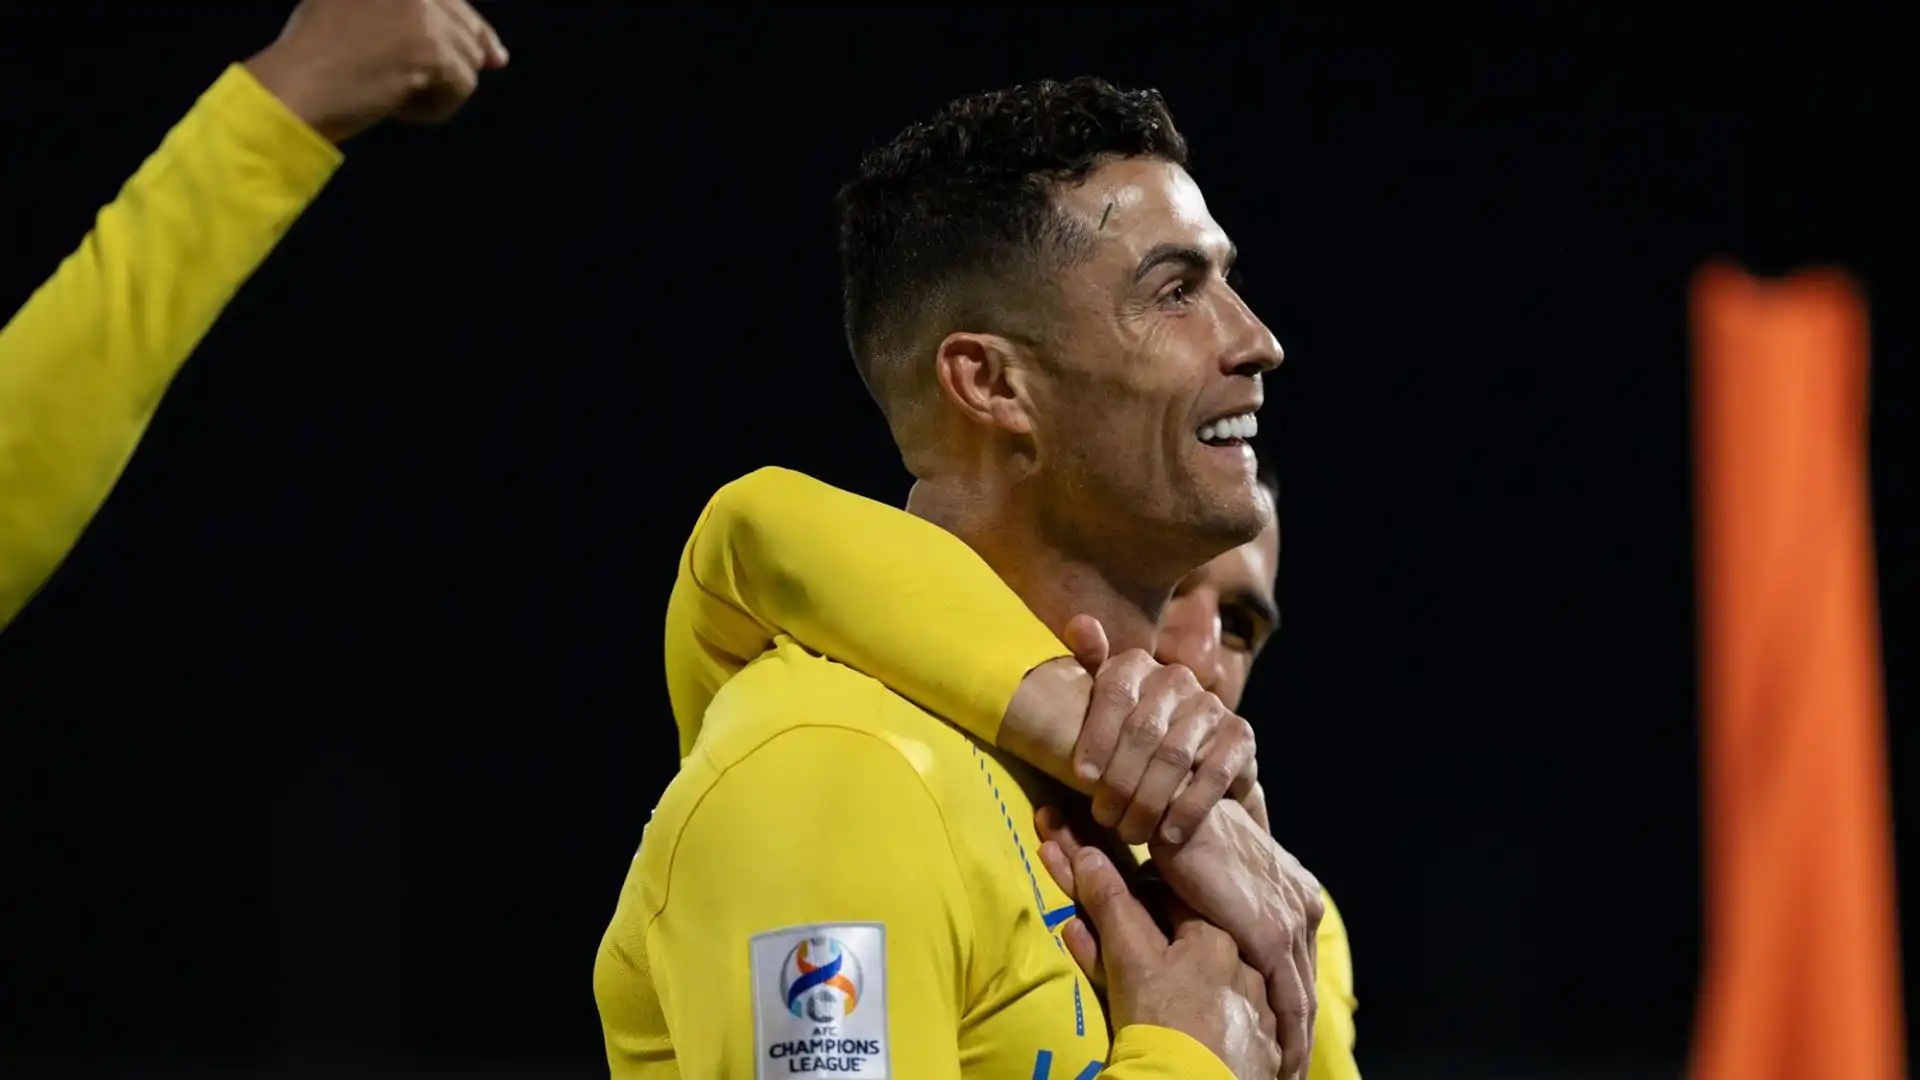 Per l'occasione, Ronaldo ha inaugurato una nuova esultanza dopo il gol